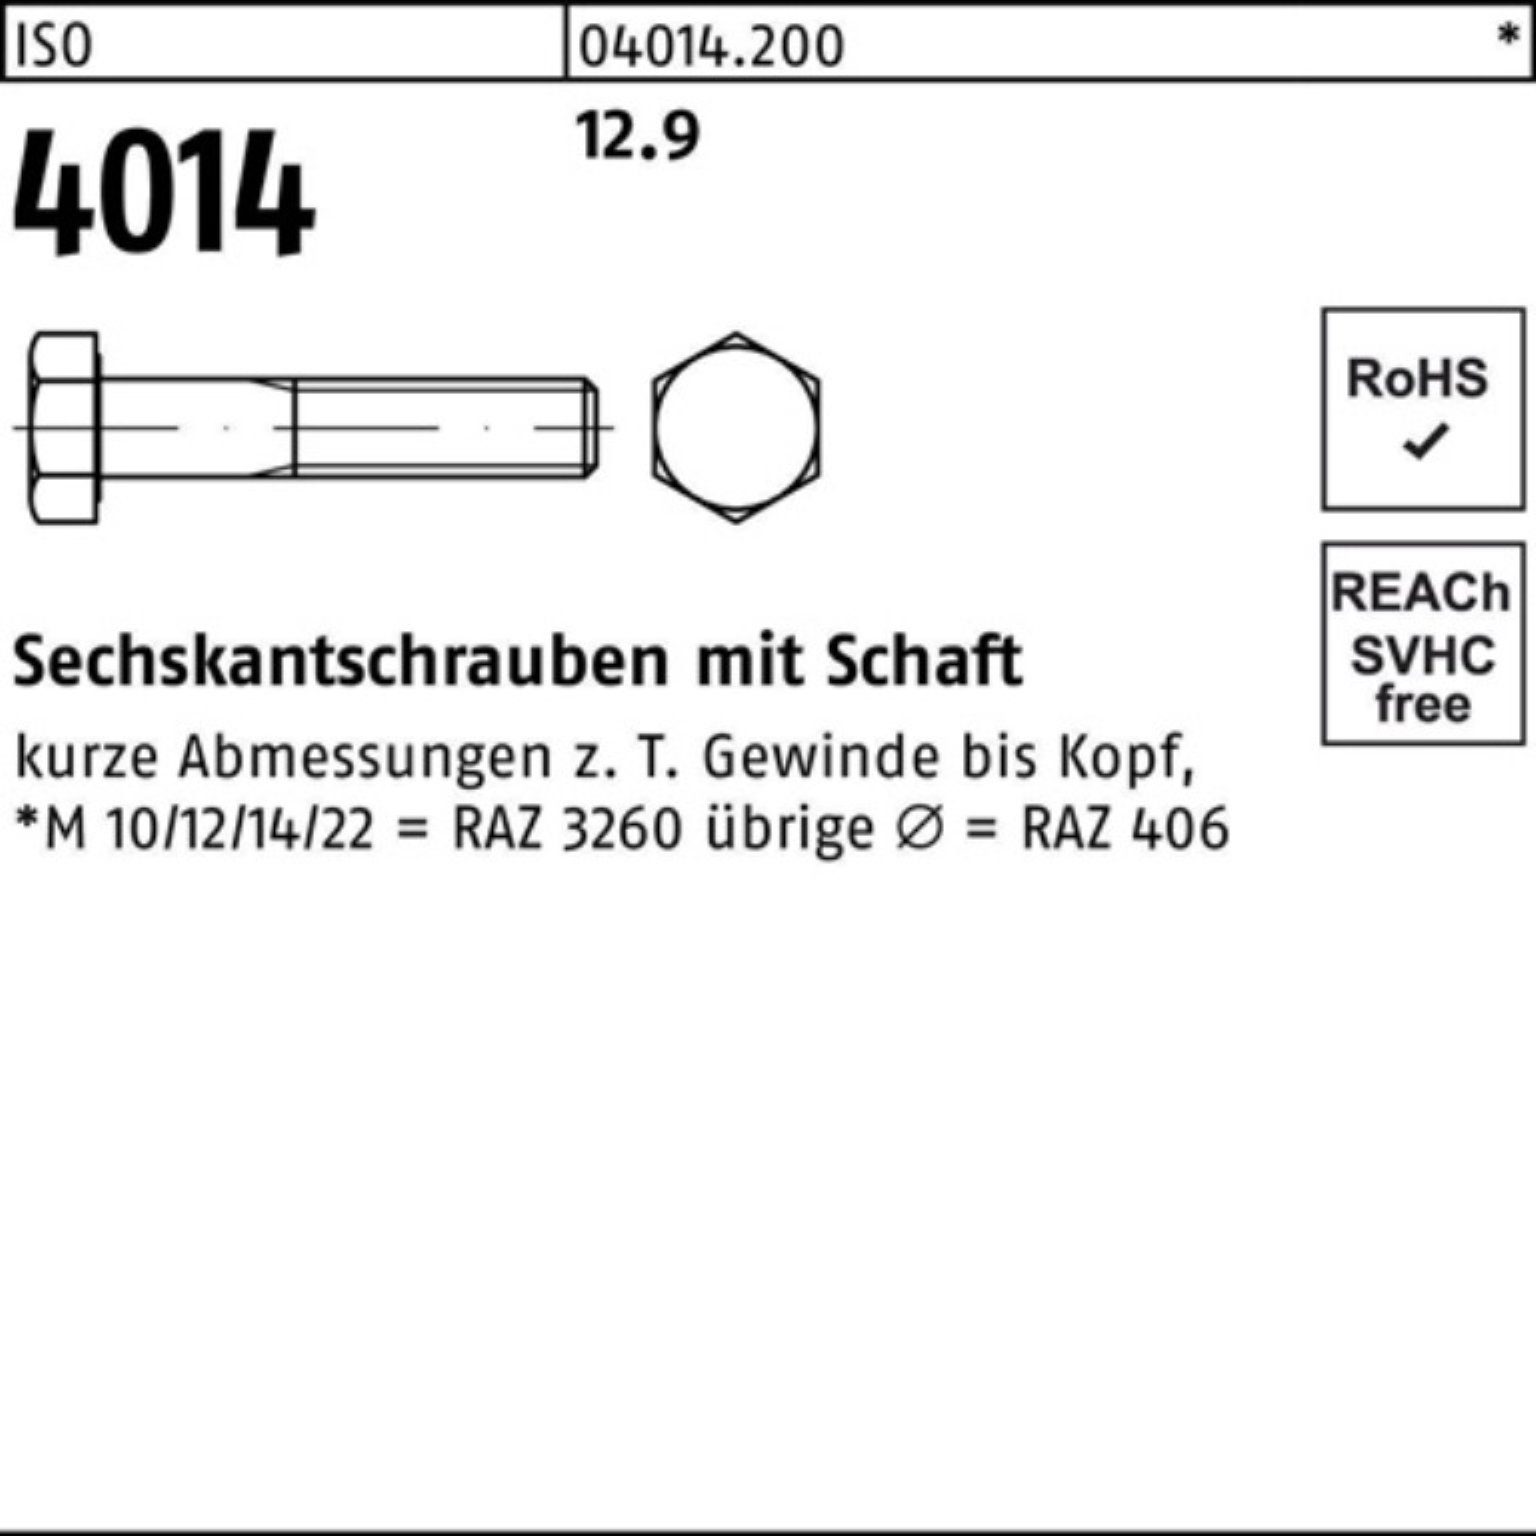 Sechskantschraube 100er Bufab I 40 Sechskantschraube ISO Stück Schaft 4014 M10x Pack 12.9 100